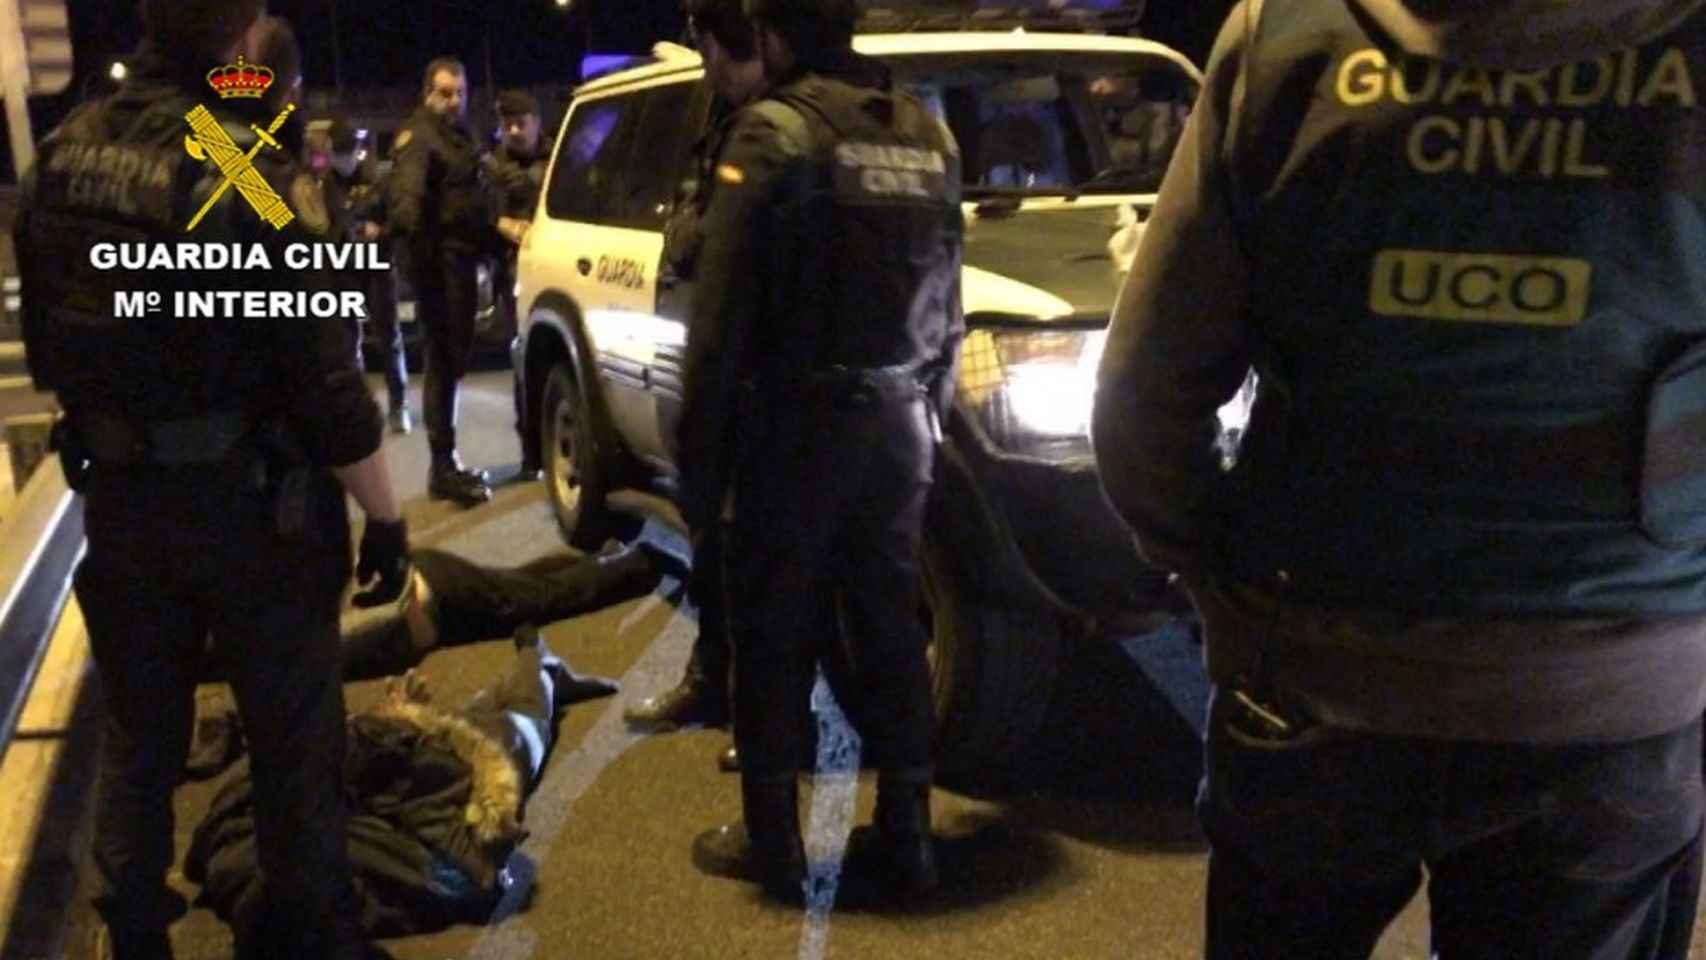 La Guardia Civil mientras detiene a los implicados en el secuestro / Guardia Civil